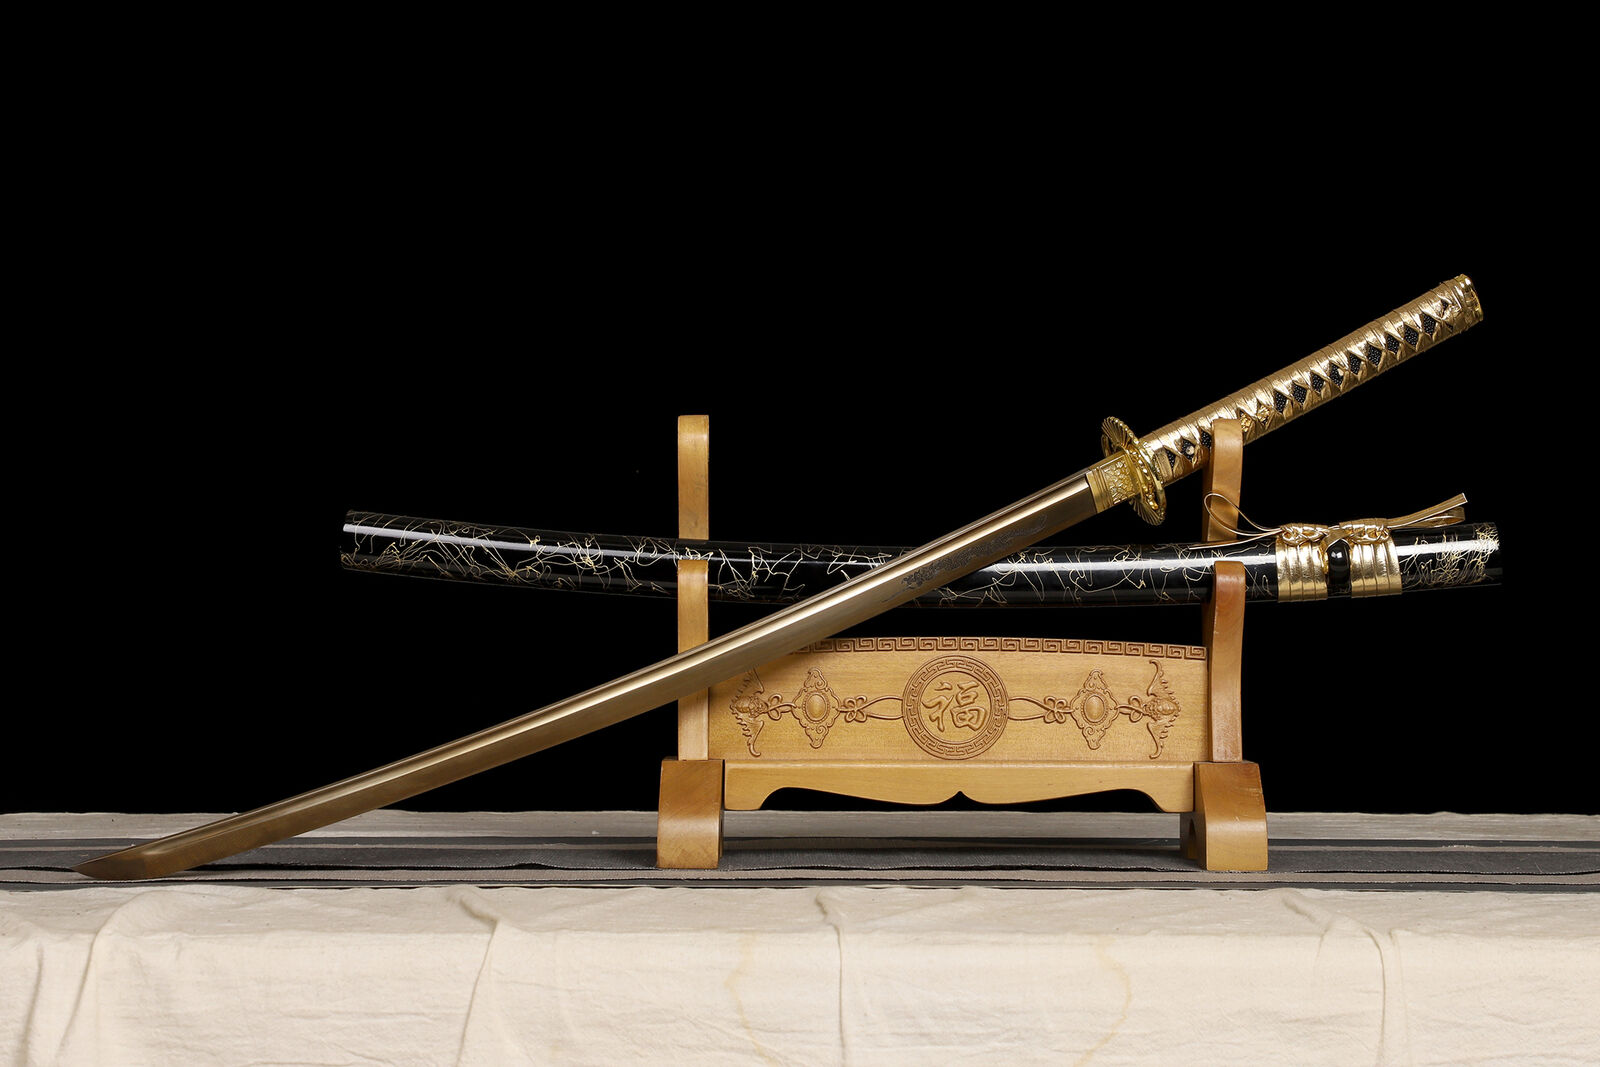 Golden Katana 1095 Steel Japanese Samurai Full Tang Dragon Sword